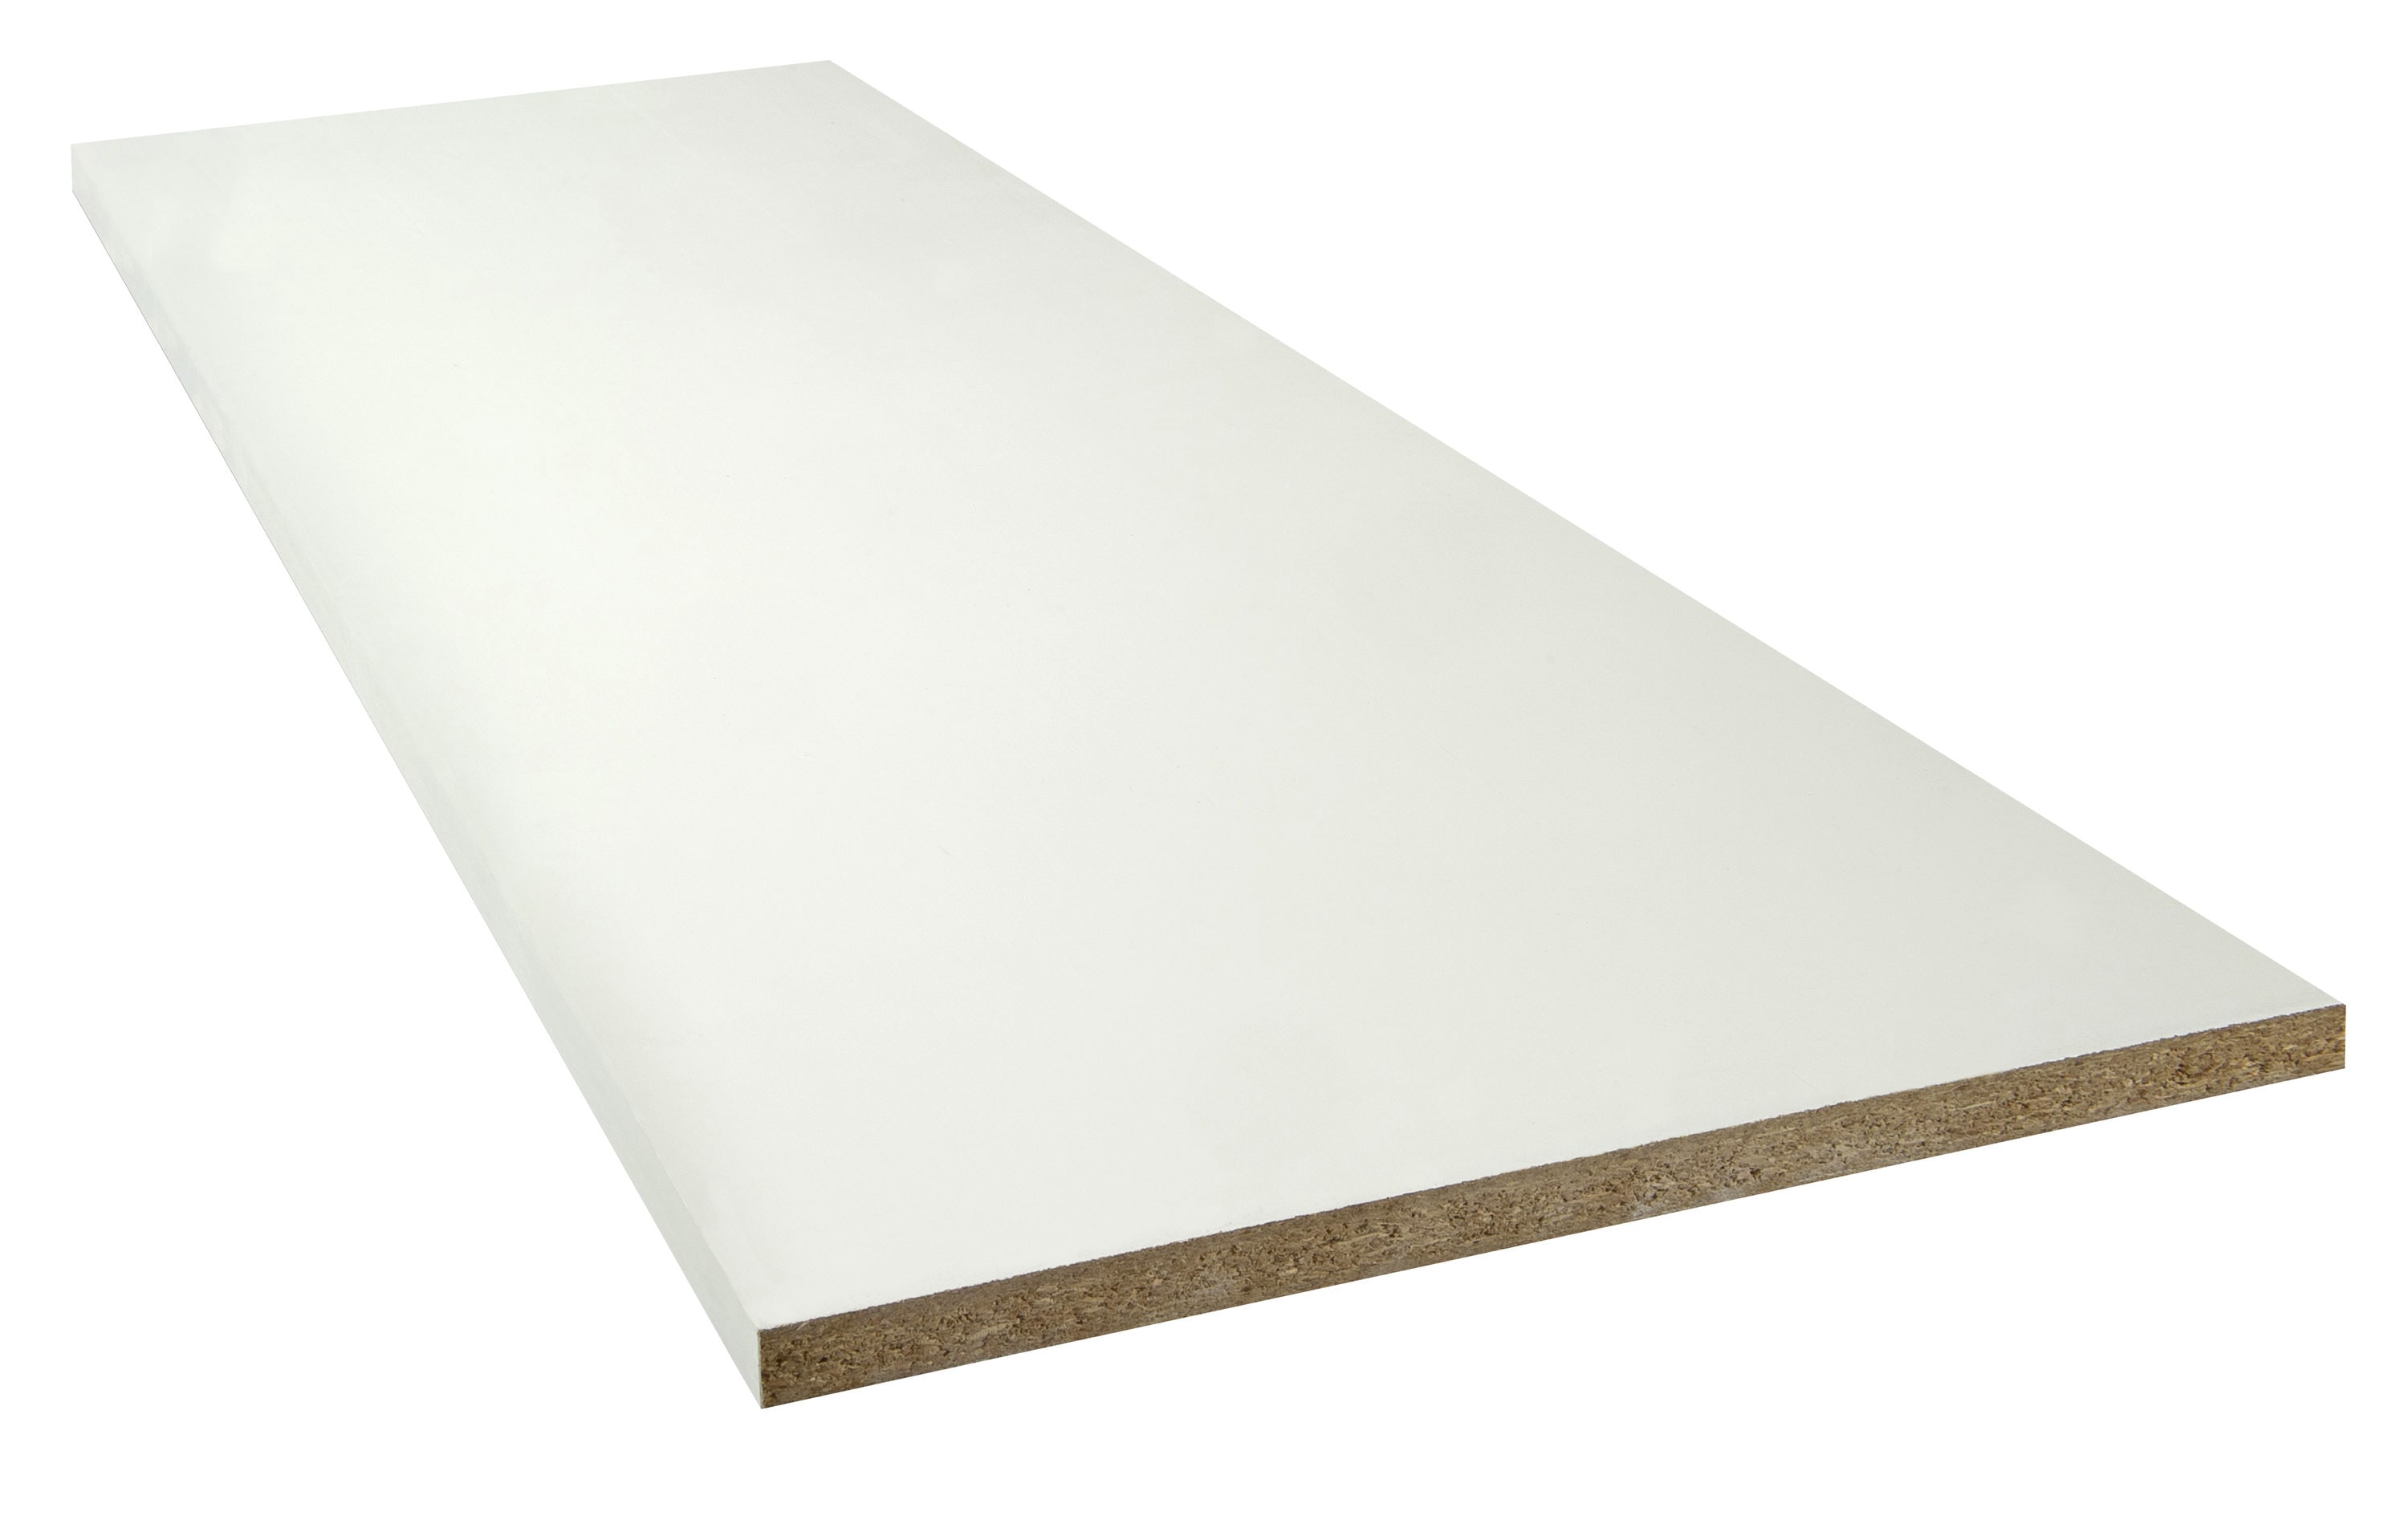 White Laminated Wood Shelf 12 in. D x 72 in. L